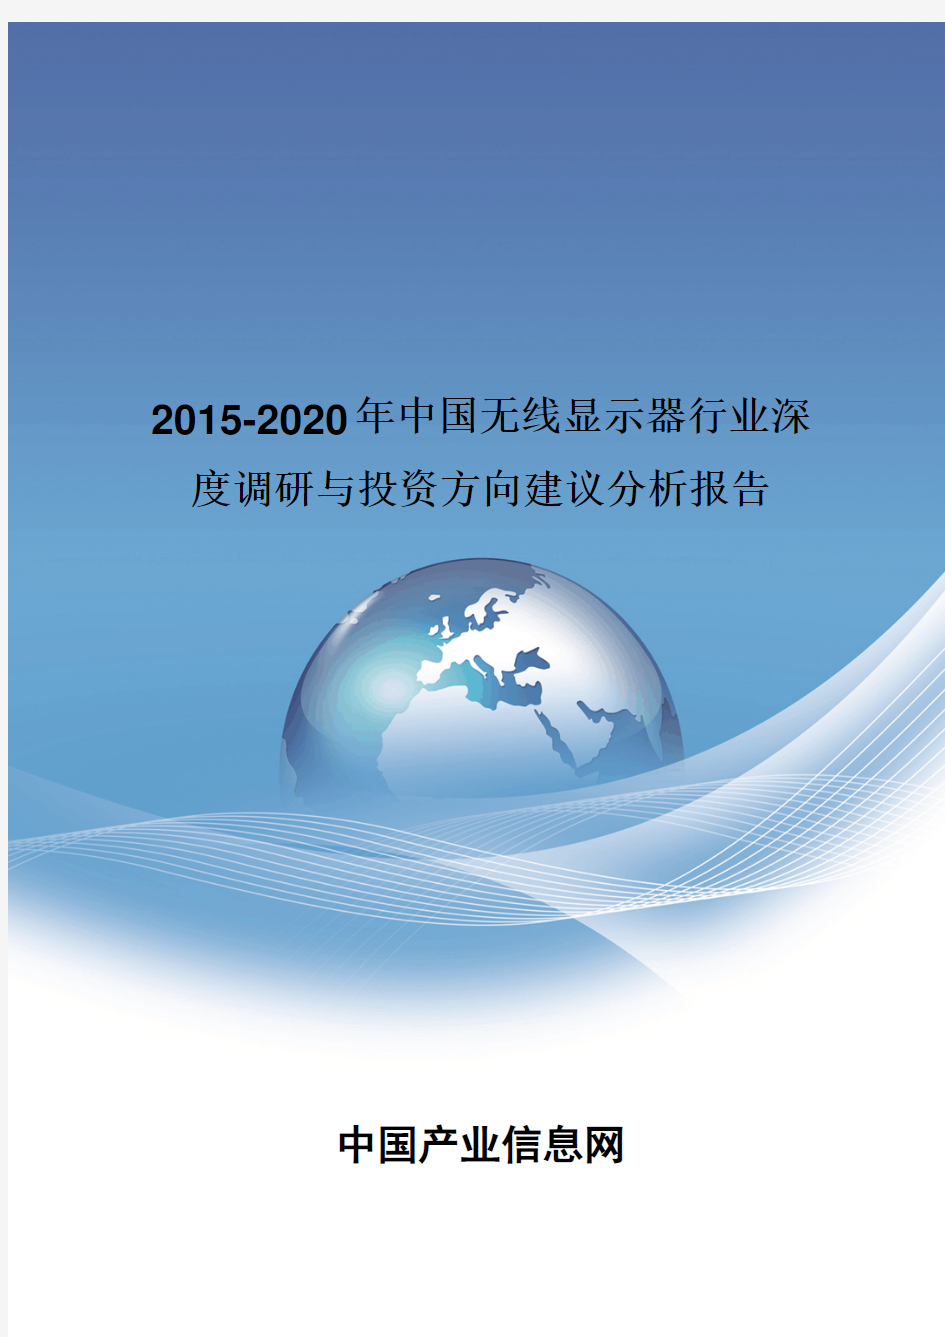 2015-2020年中国无线显示器行业深度调研报告